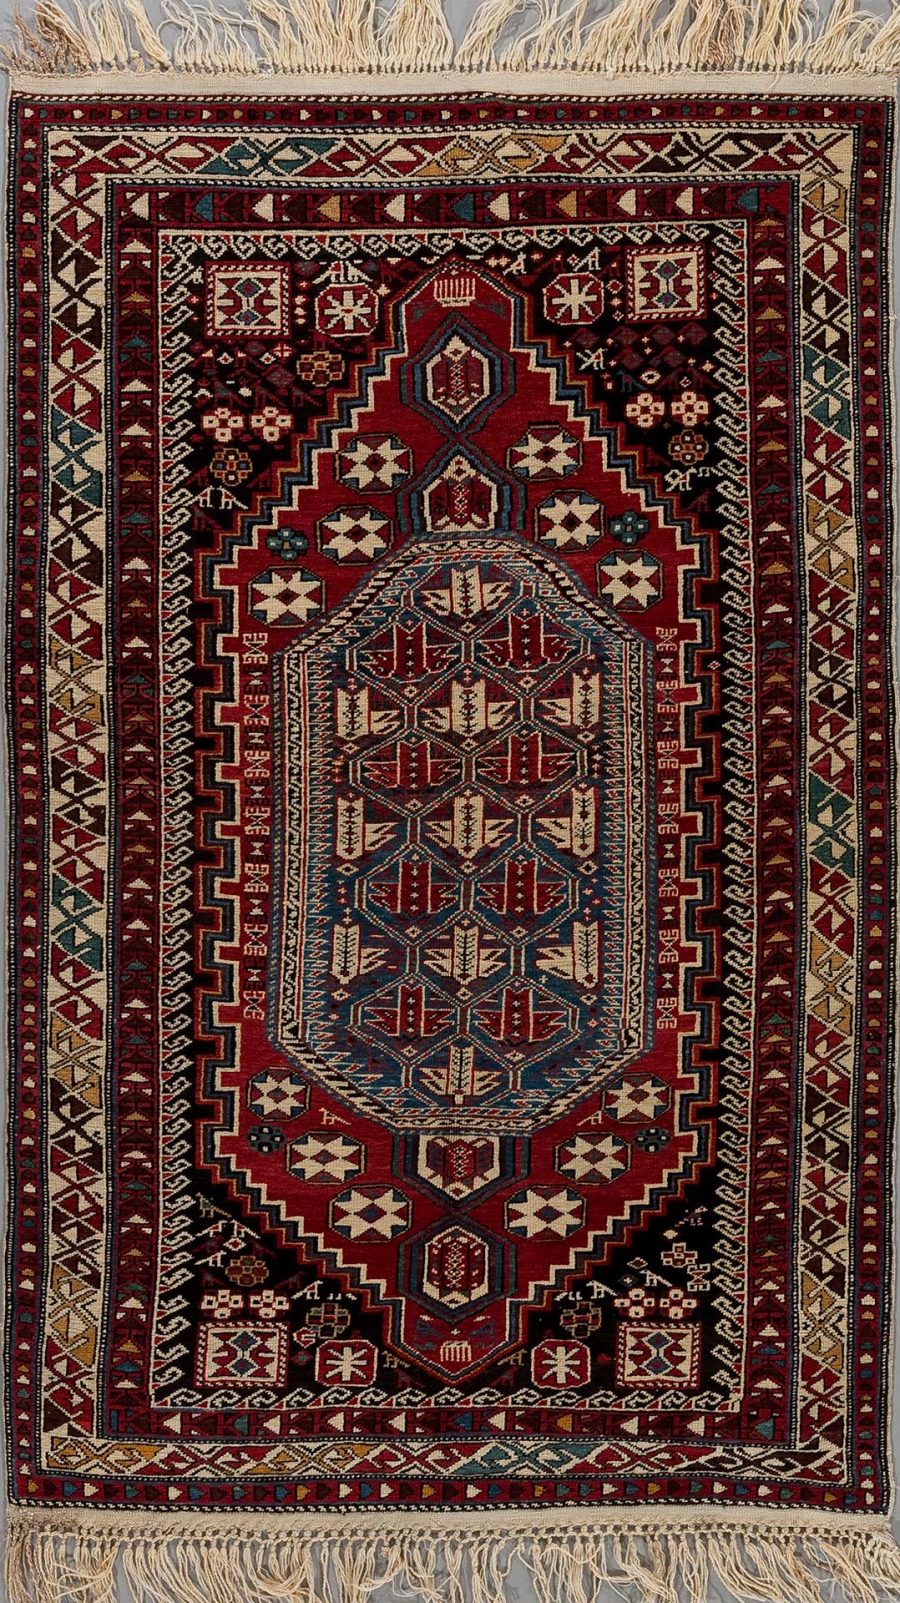 Detailaufnahme eines traditionellen handgeknüpften Teppichs mit komplexem Muster in Rot-, Blau-, Beige- und Schwarztönen, mit Fransen an den Enden.